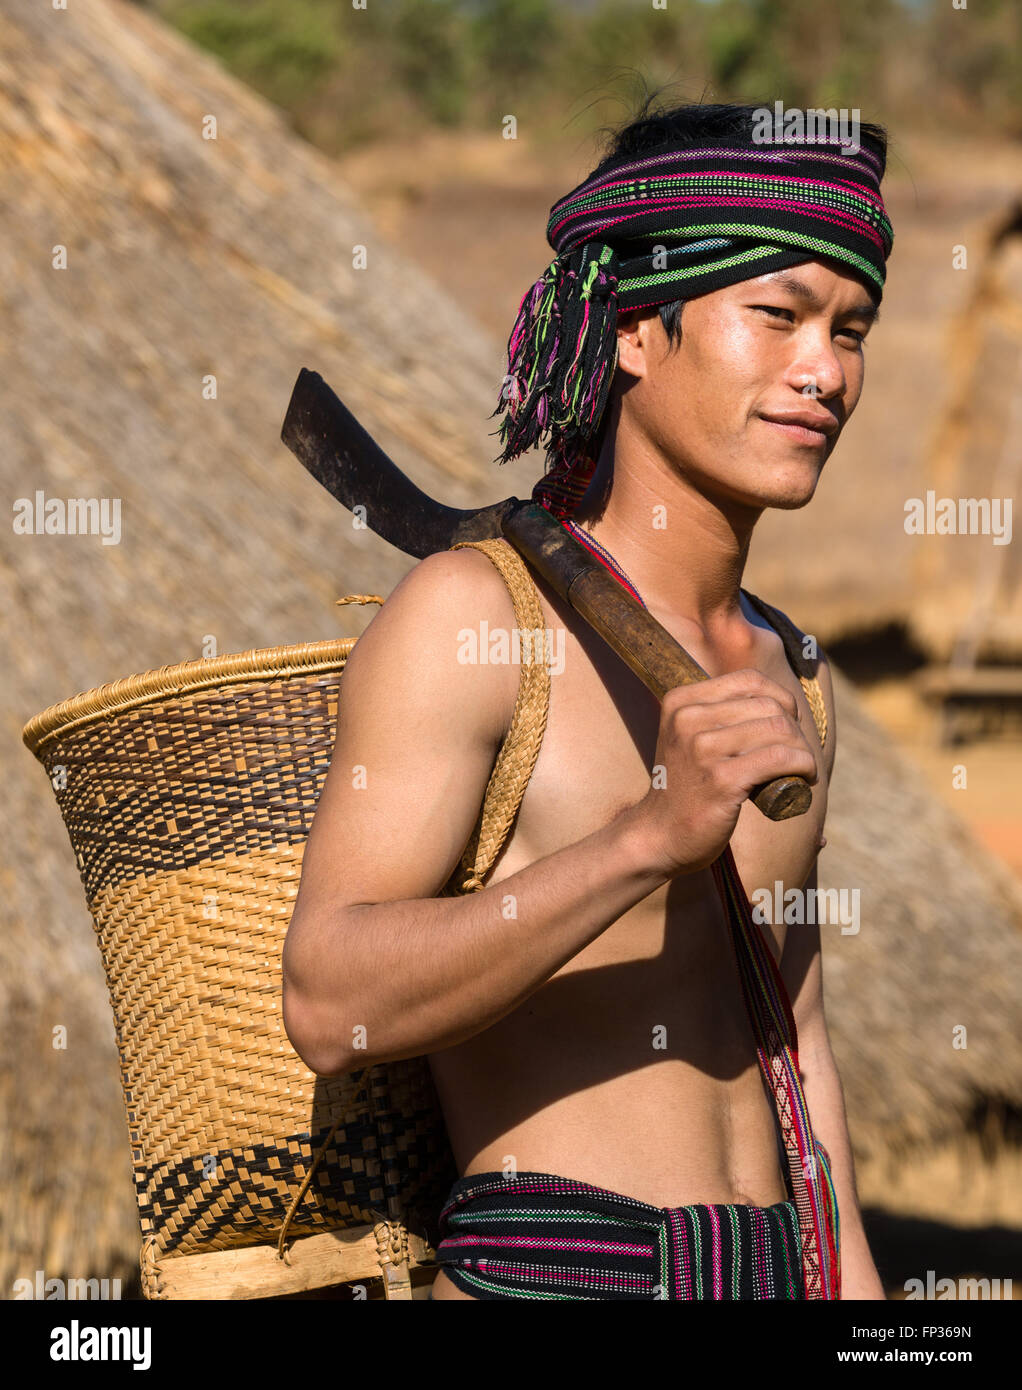 Hombre con traje tradicional, minoría étnica Pnong, Bunong, Senmonorom, Sen Monorom, provincia de Mondulkiri, Camboya Foto de stock